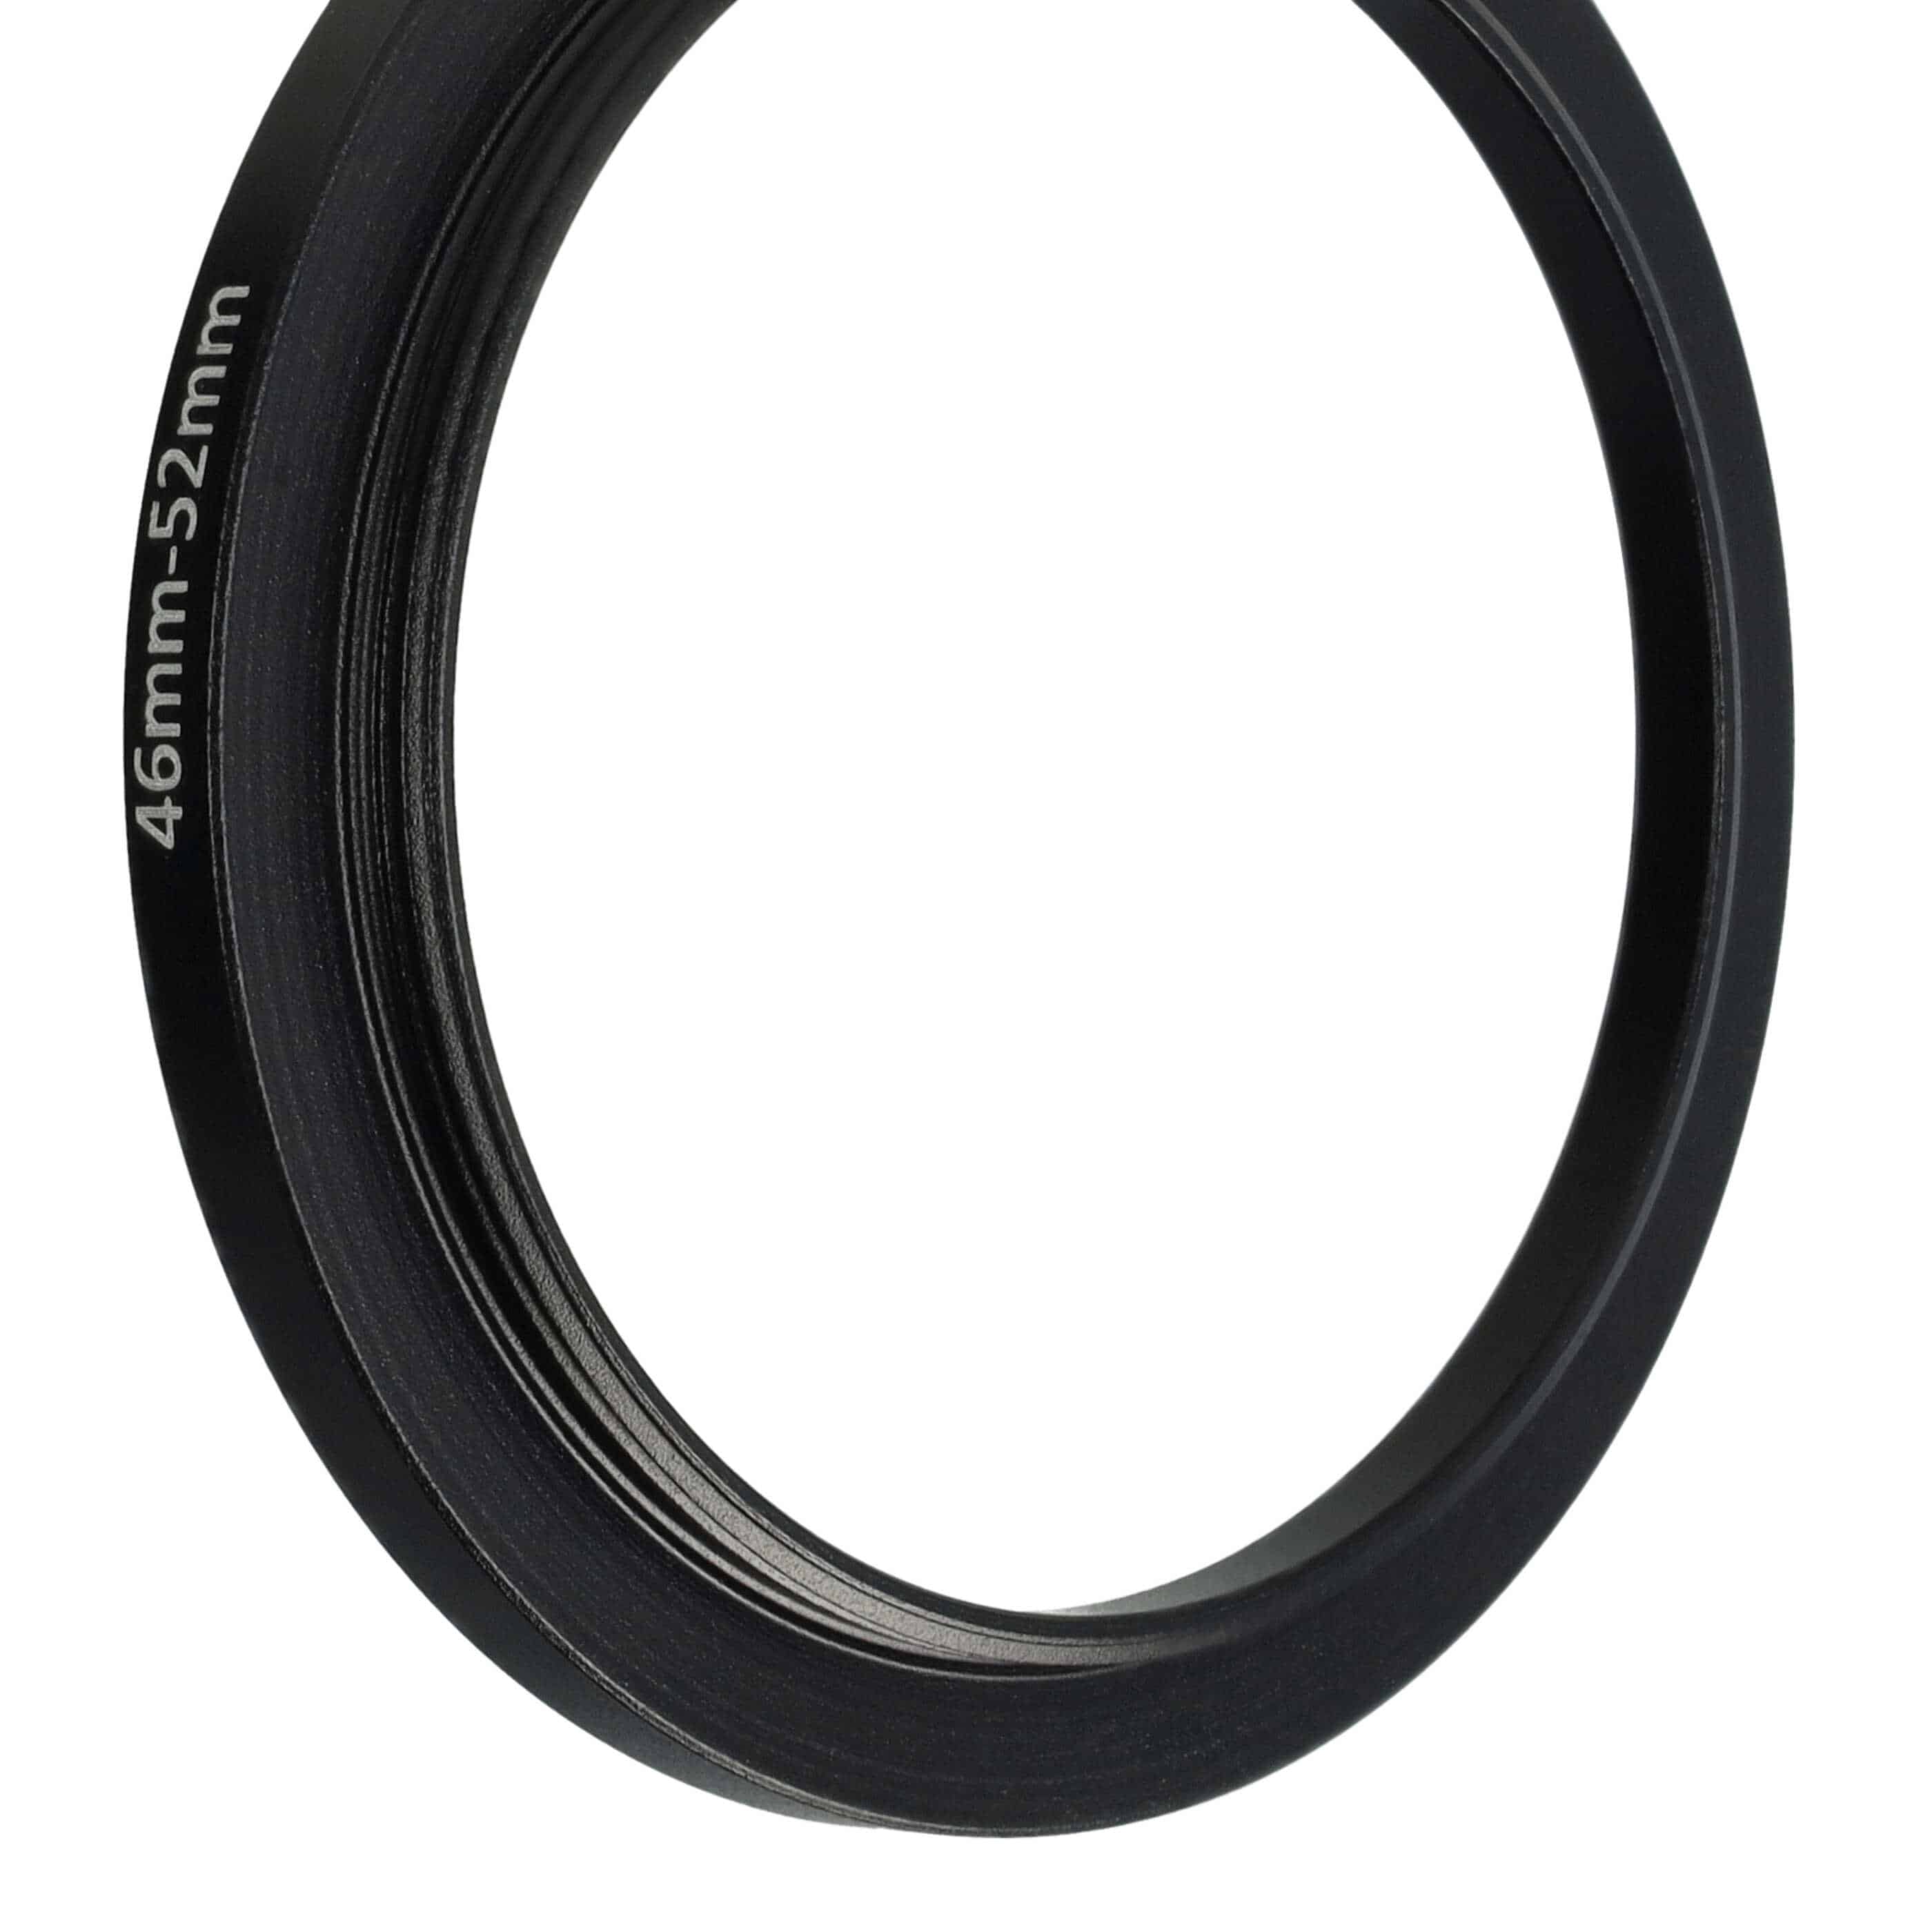 Step-Up-Ring Adapter 46 mm auf 52 mm passend für diverse Kamera-Objektive - Filteradapter